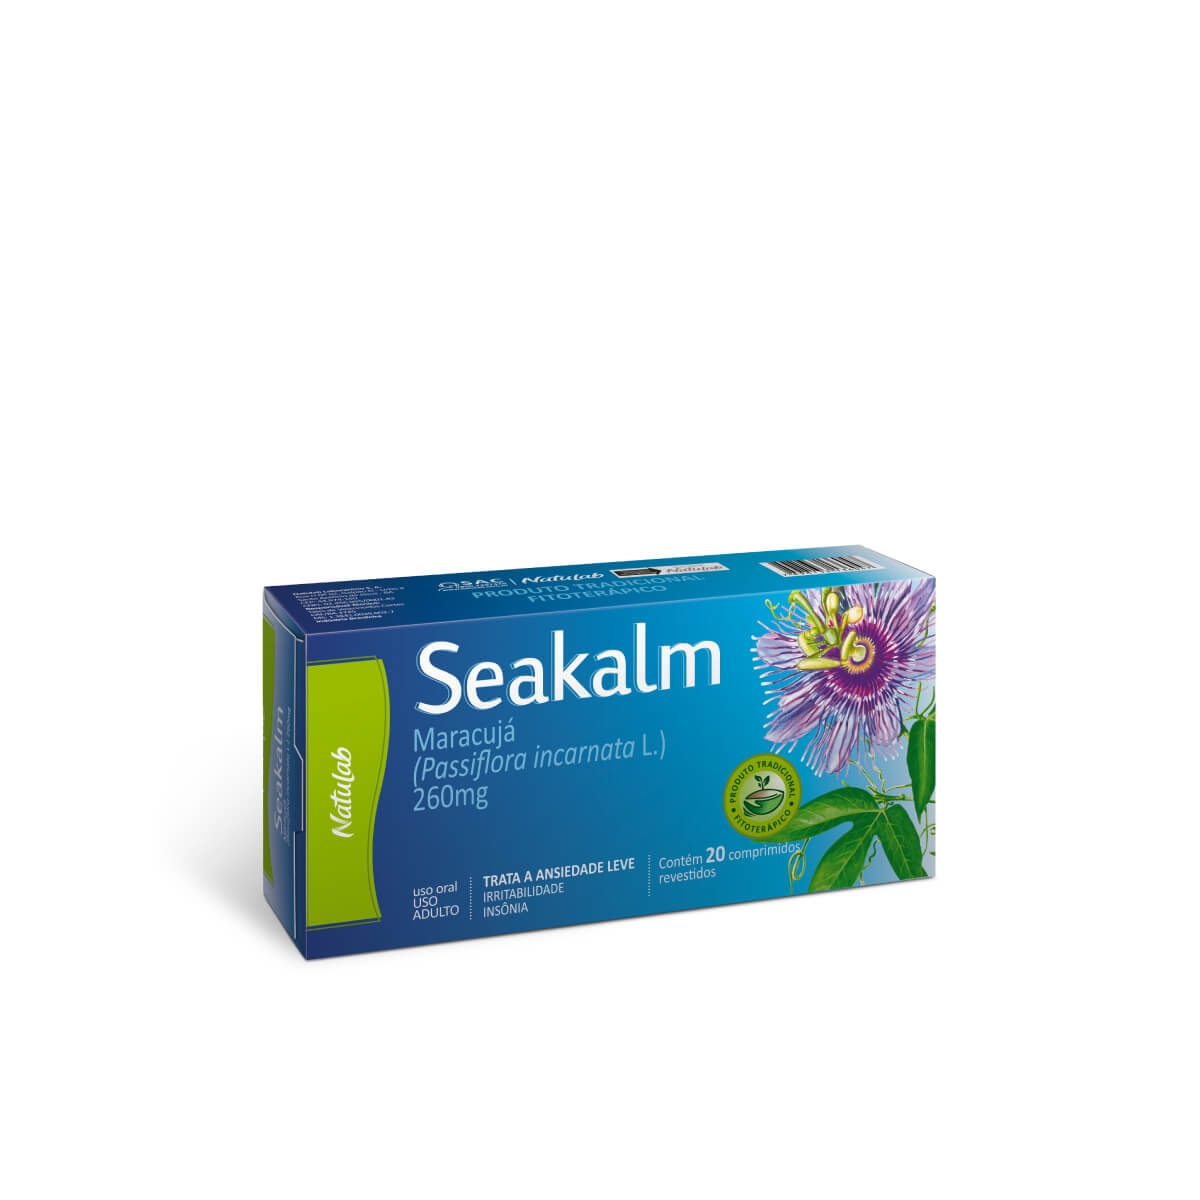 Seakalm 260mg 20 comprimidos